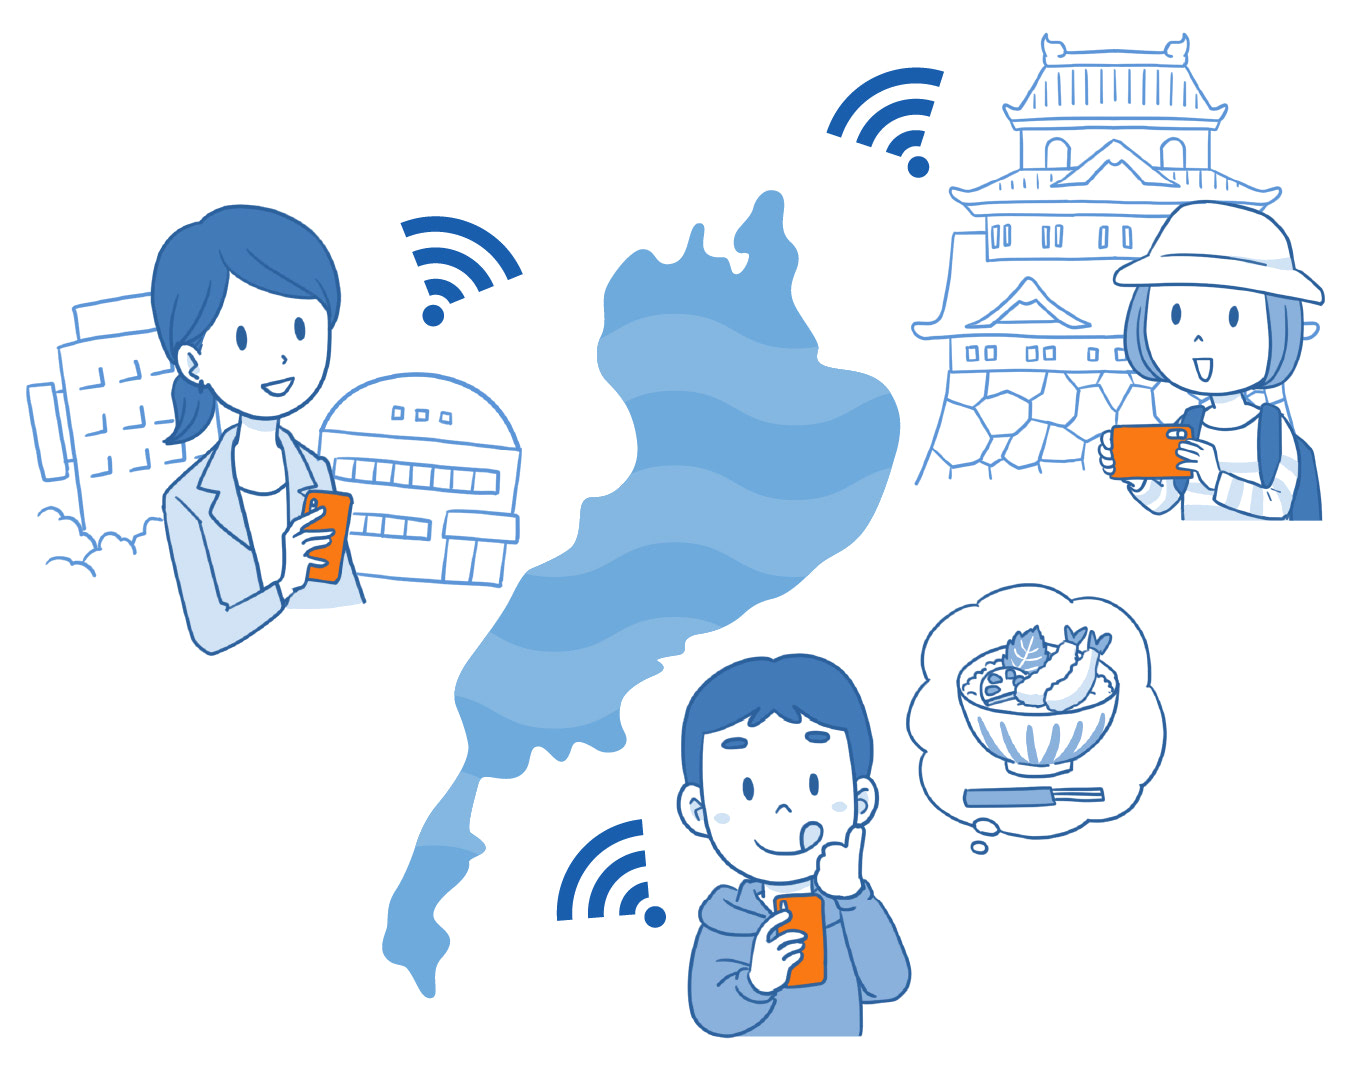 滋賀県内のお出かけやビジネスに「びわ湖 Free Wi-Fi」をご活用ください。